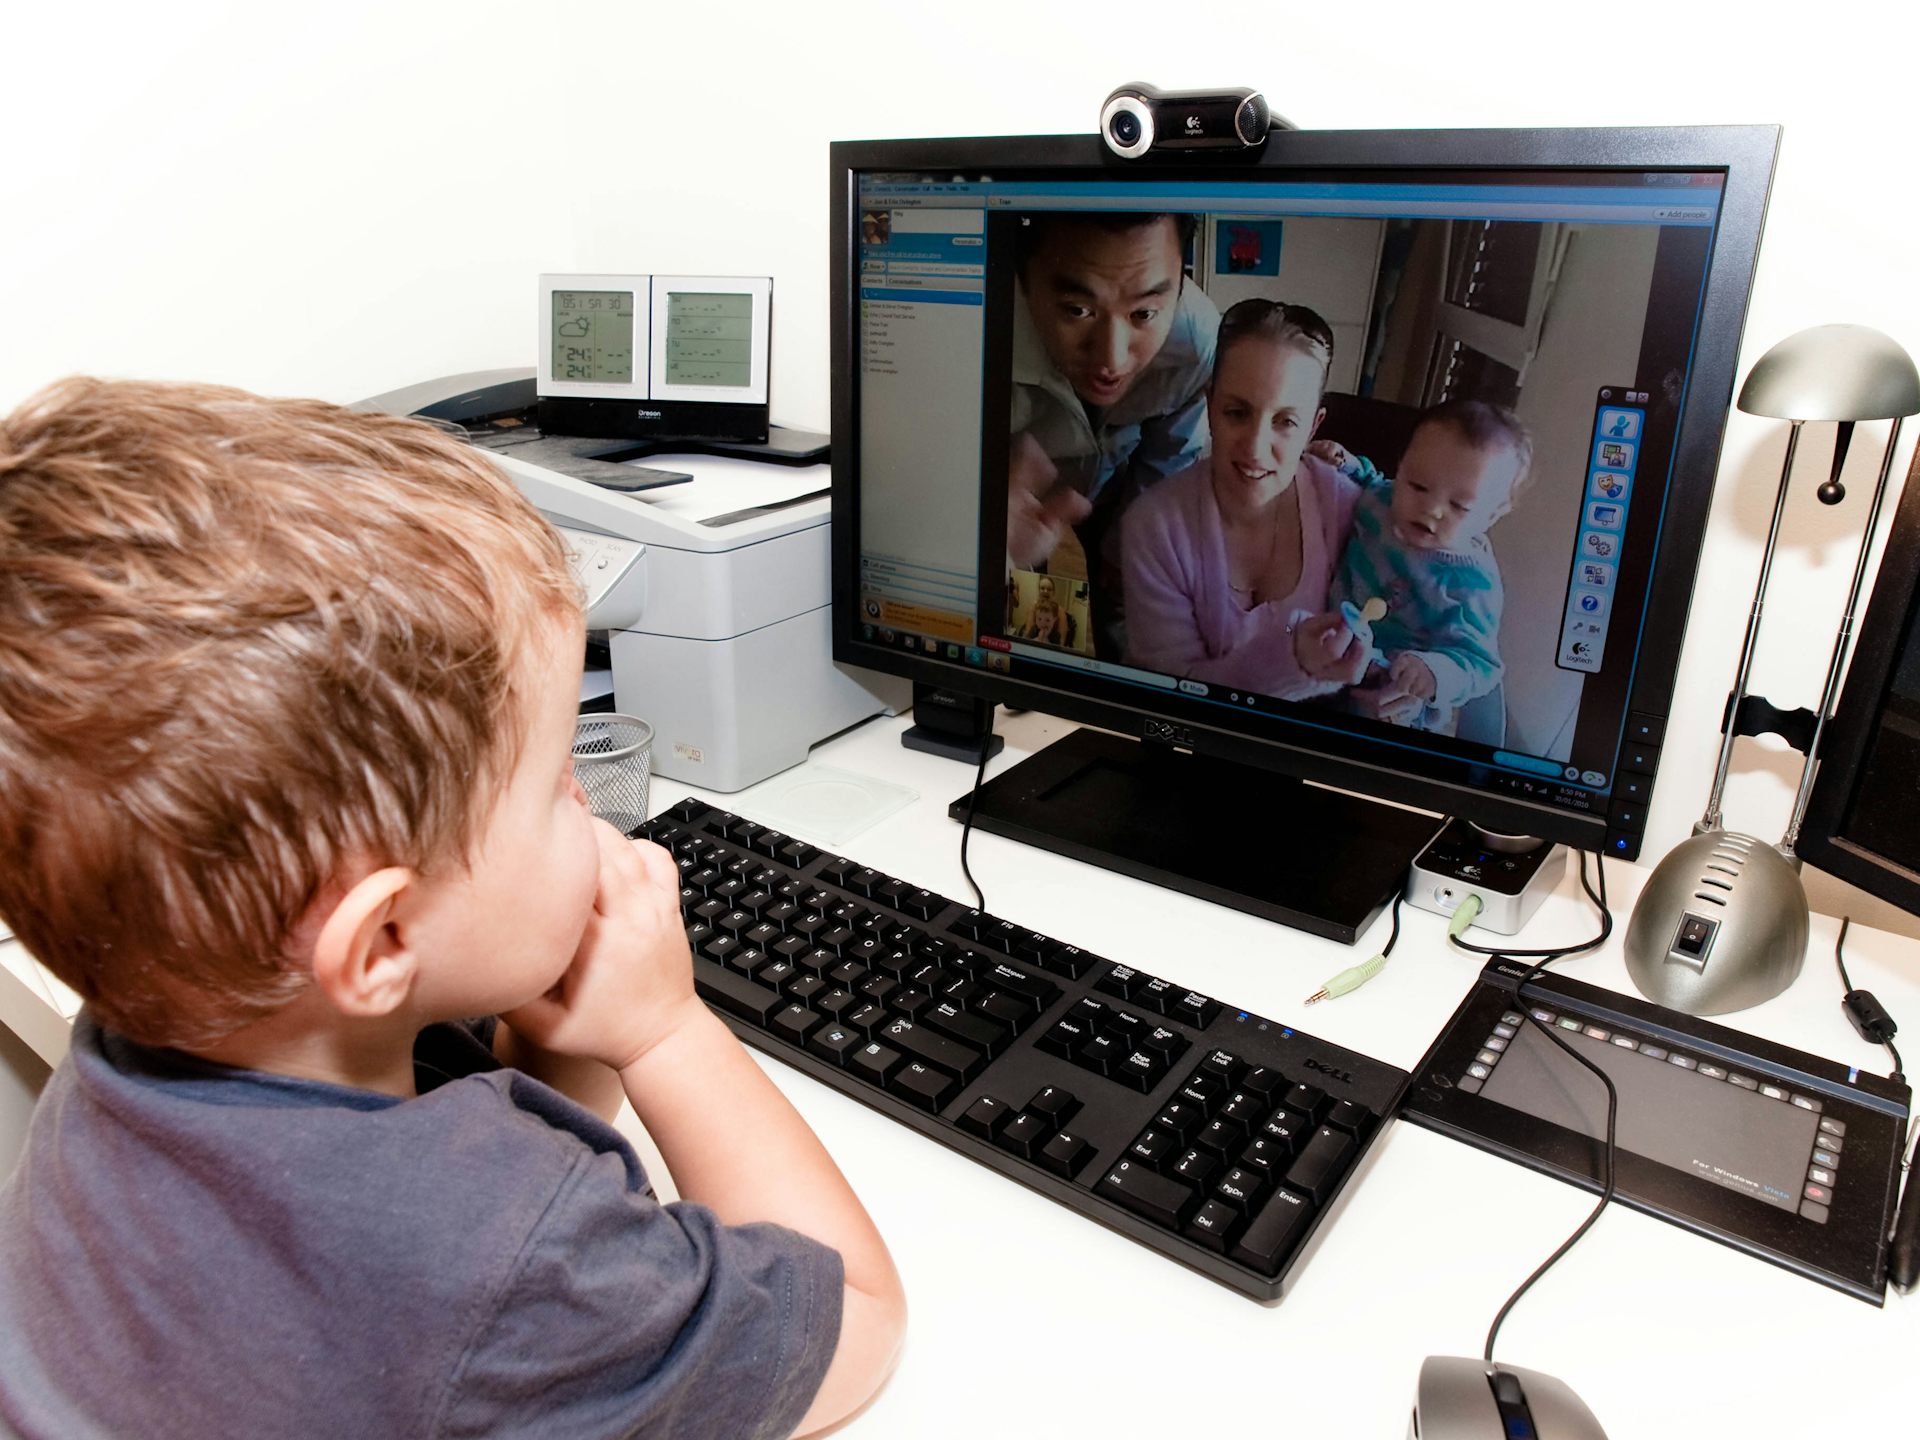 Общение с помощью интернета. Компьютер для детей. Ребенок за компьютером. Общение с компьютером. Компьютер картинка для детей.